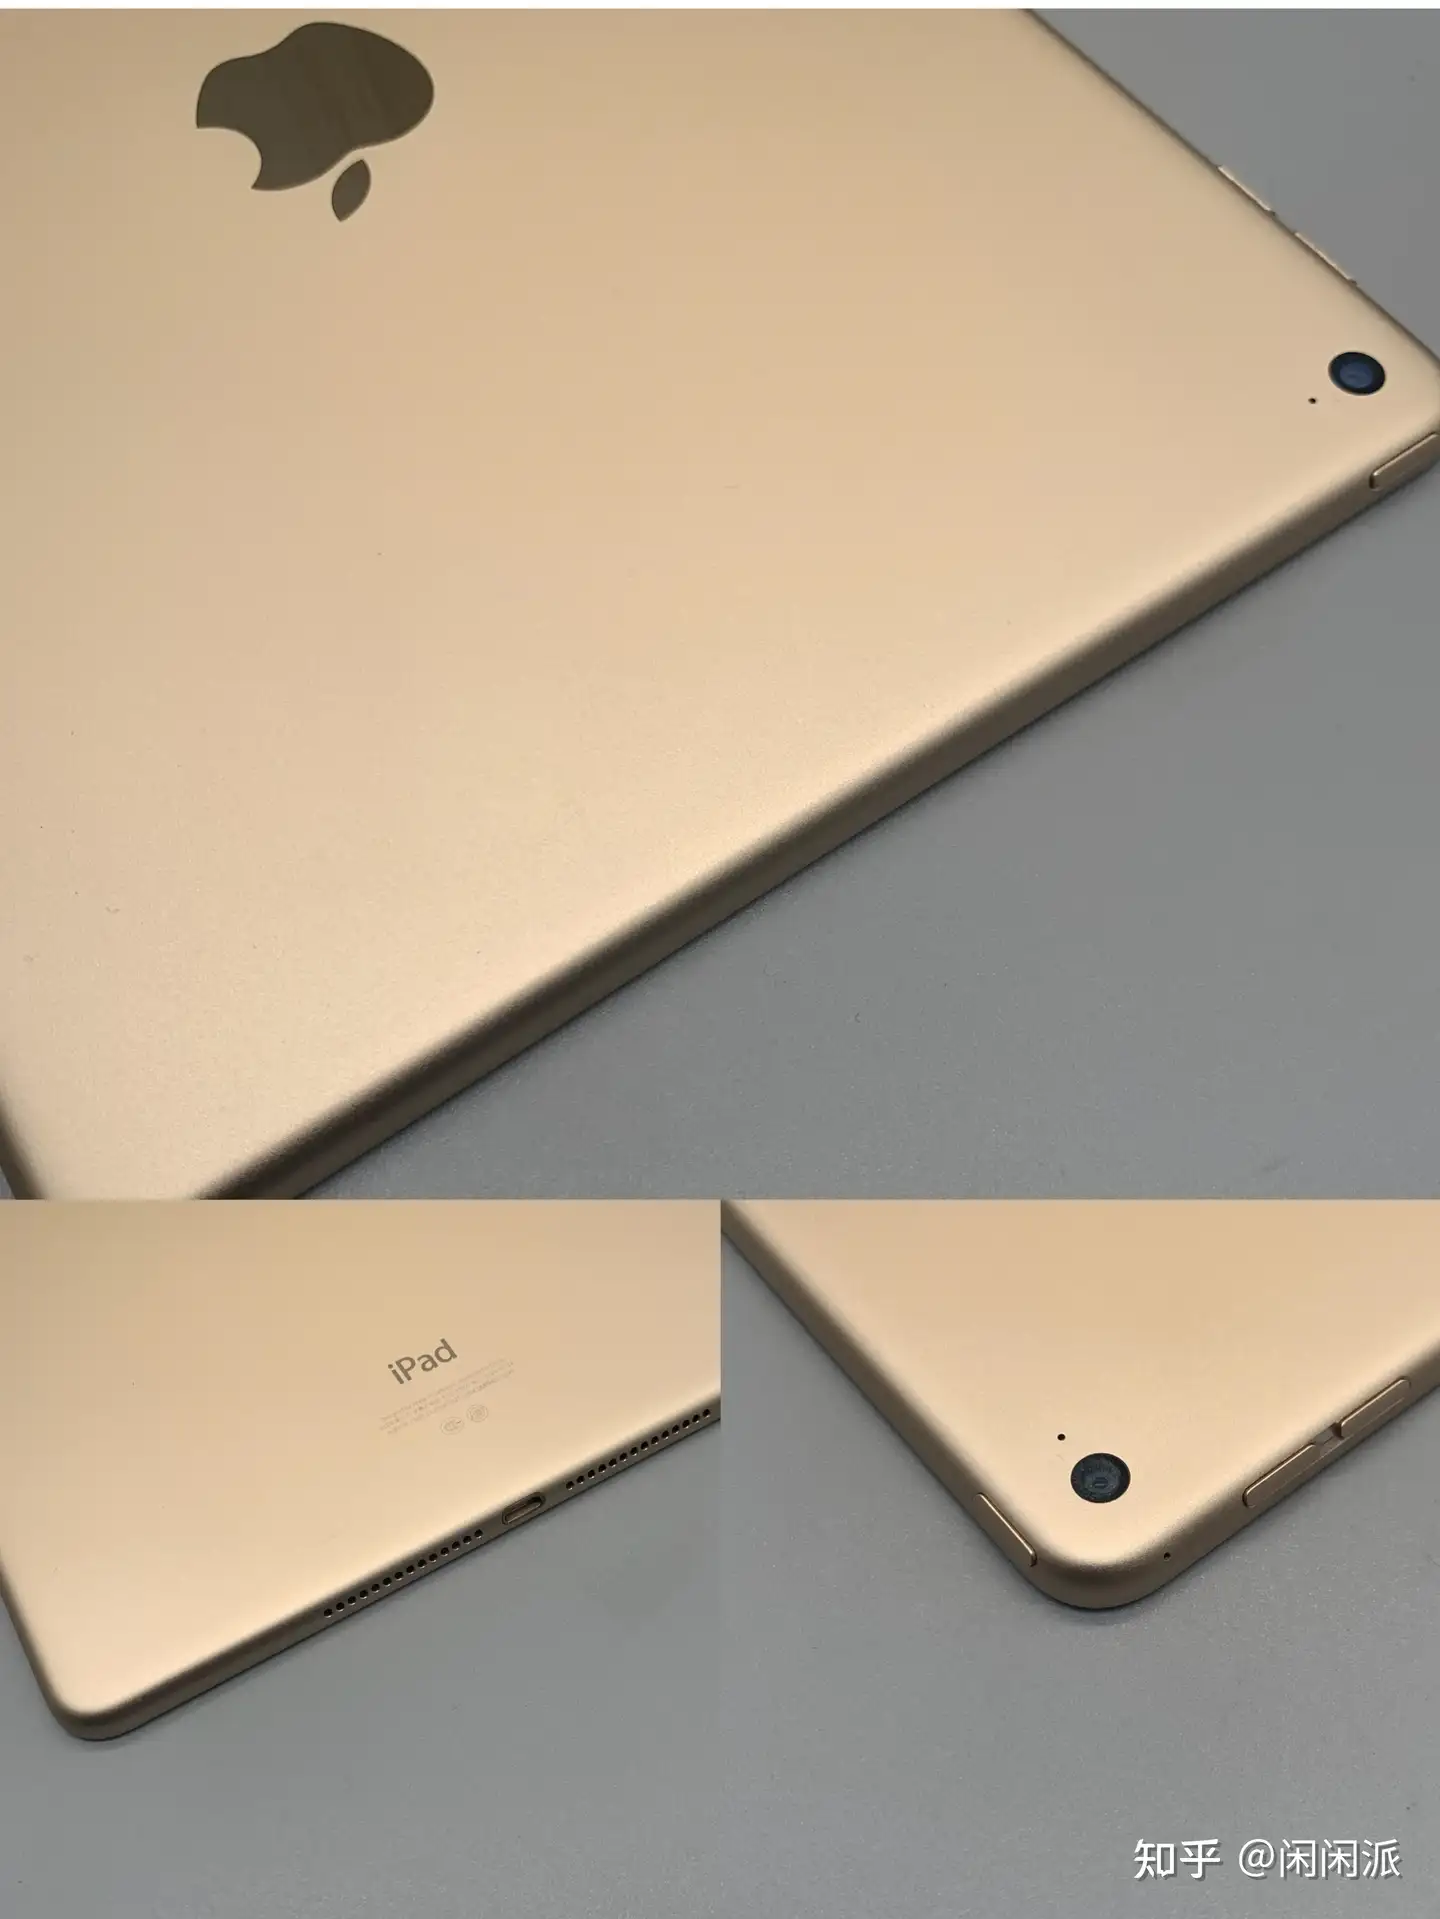 限定版 iPad 比較的綺麗 6787 Air2 au 16GB 第2世代 iPad本体 